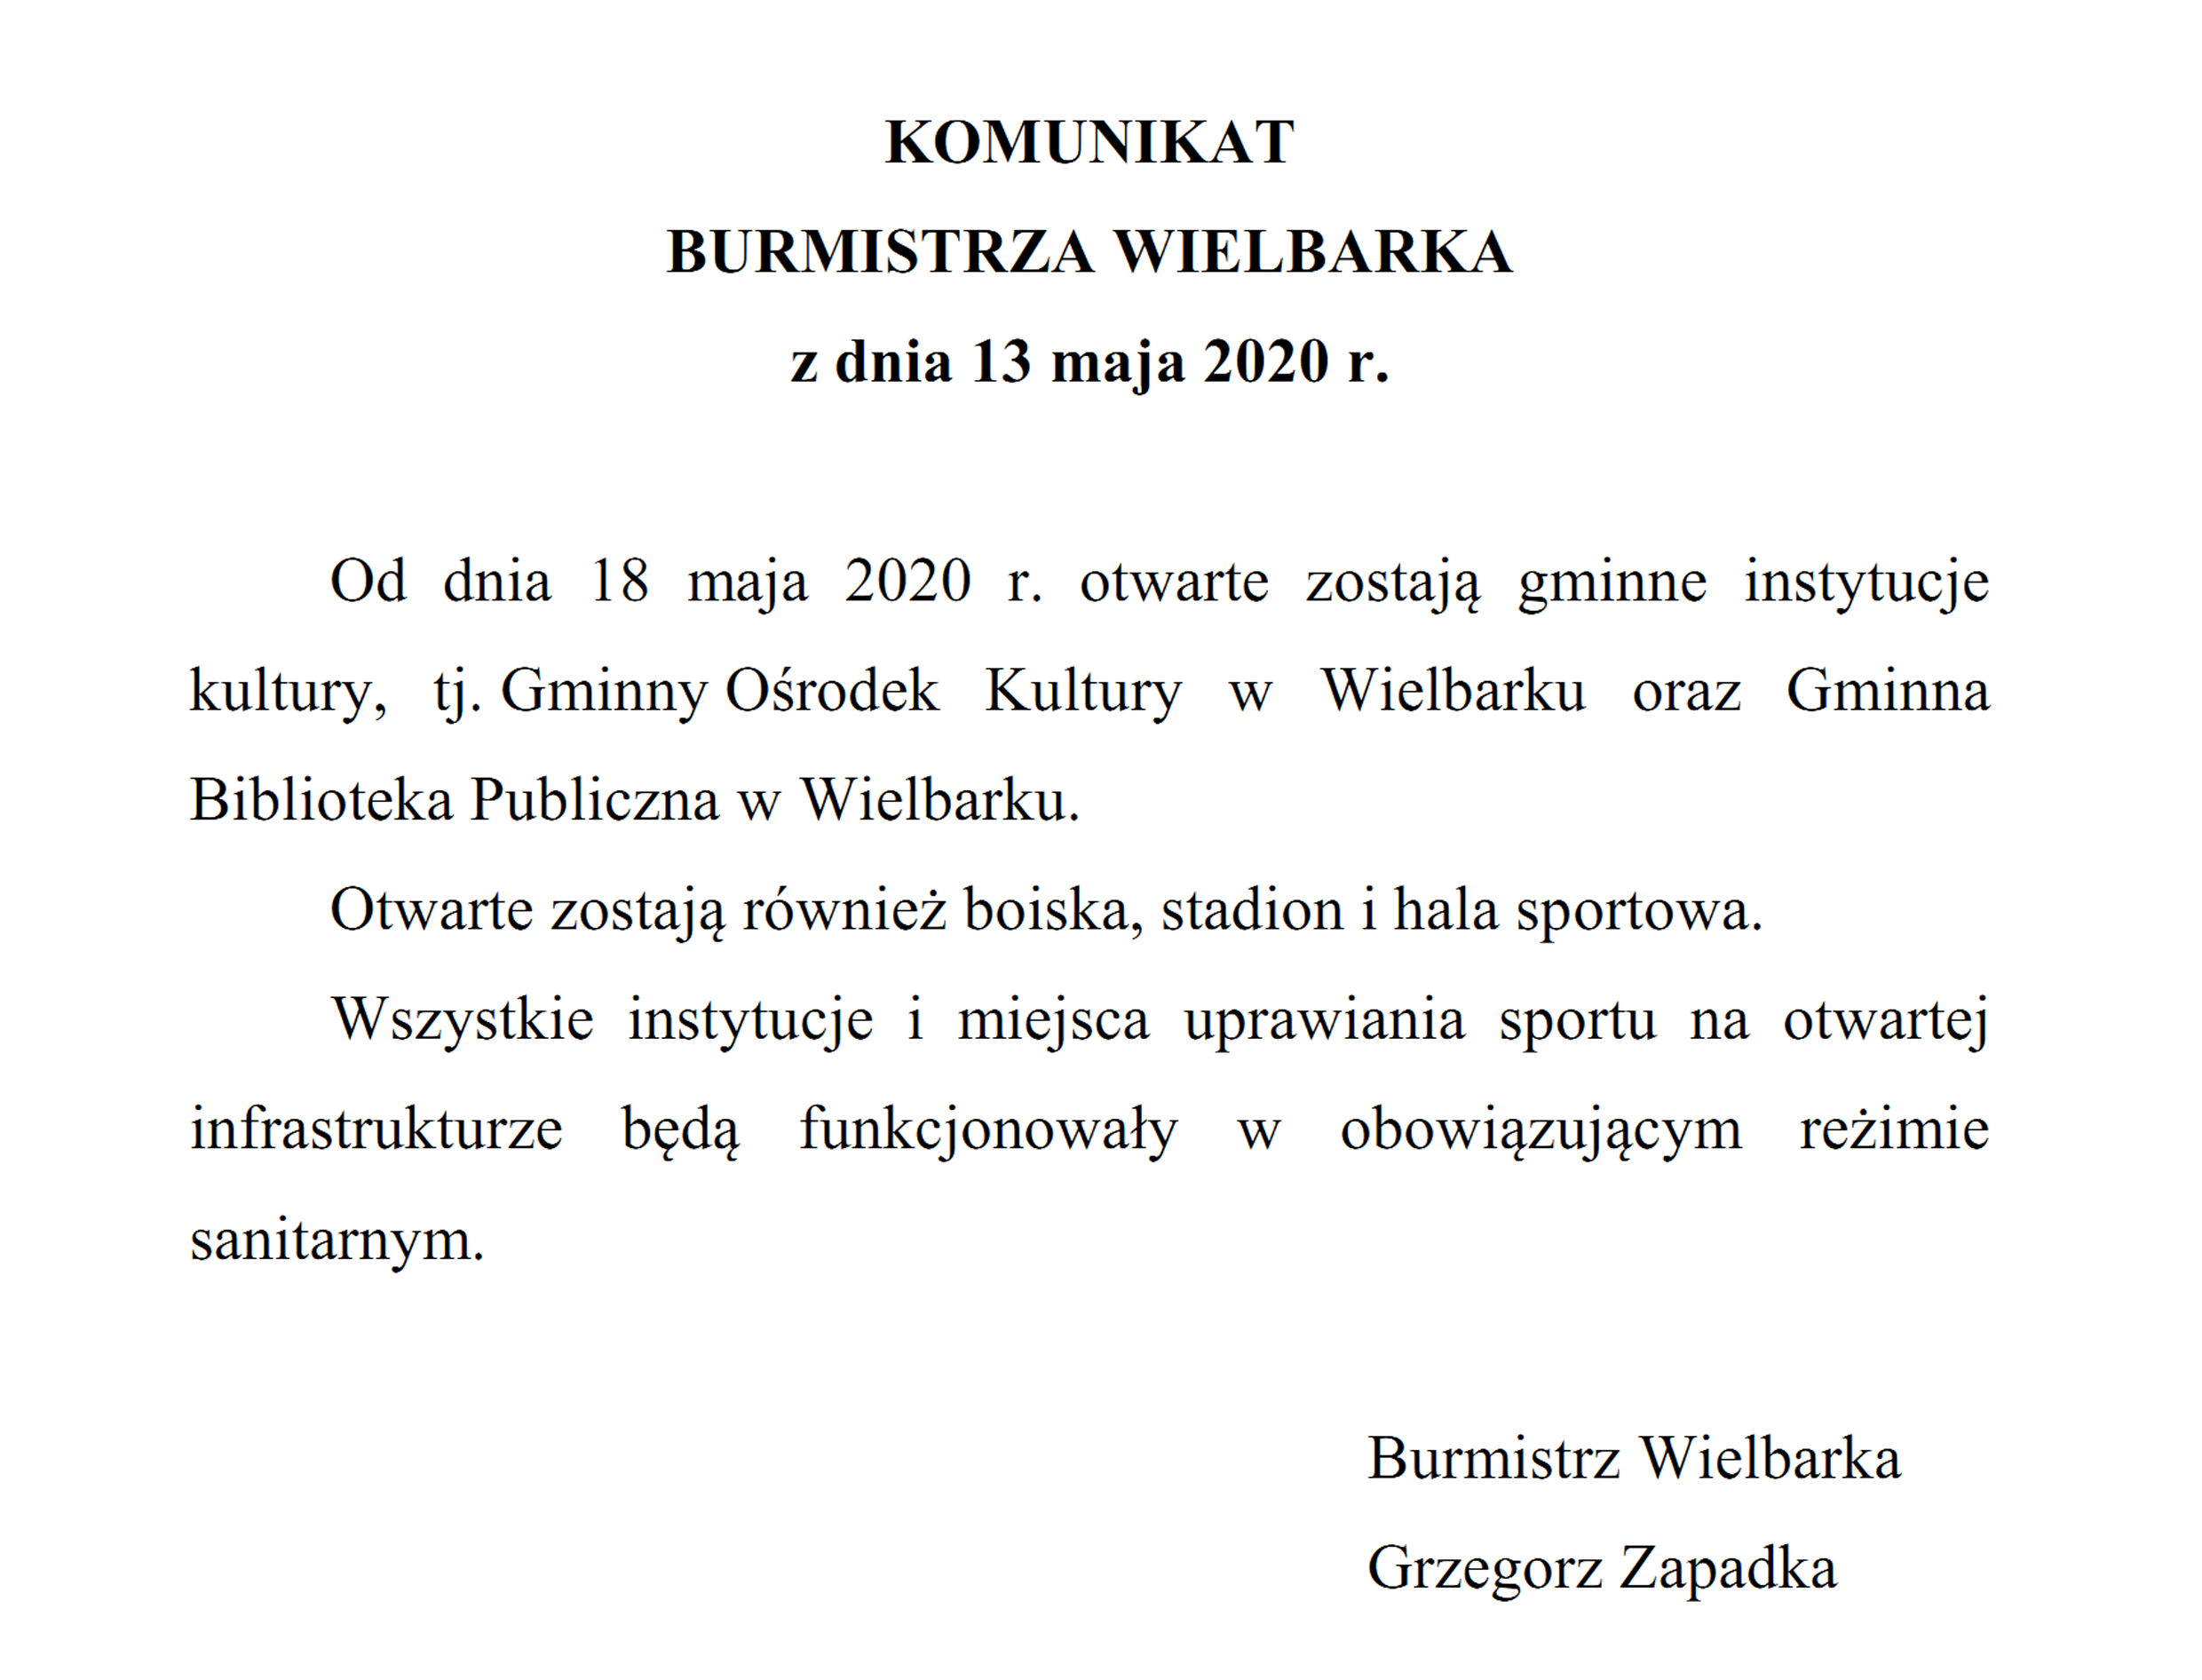 https://m.powiatszczycienski.pl/2020/05/orig/komunikat-burmistrza-wielbarka-z-dnia-13-05-2020-31166.jpg